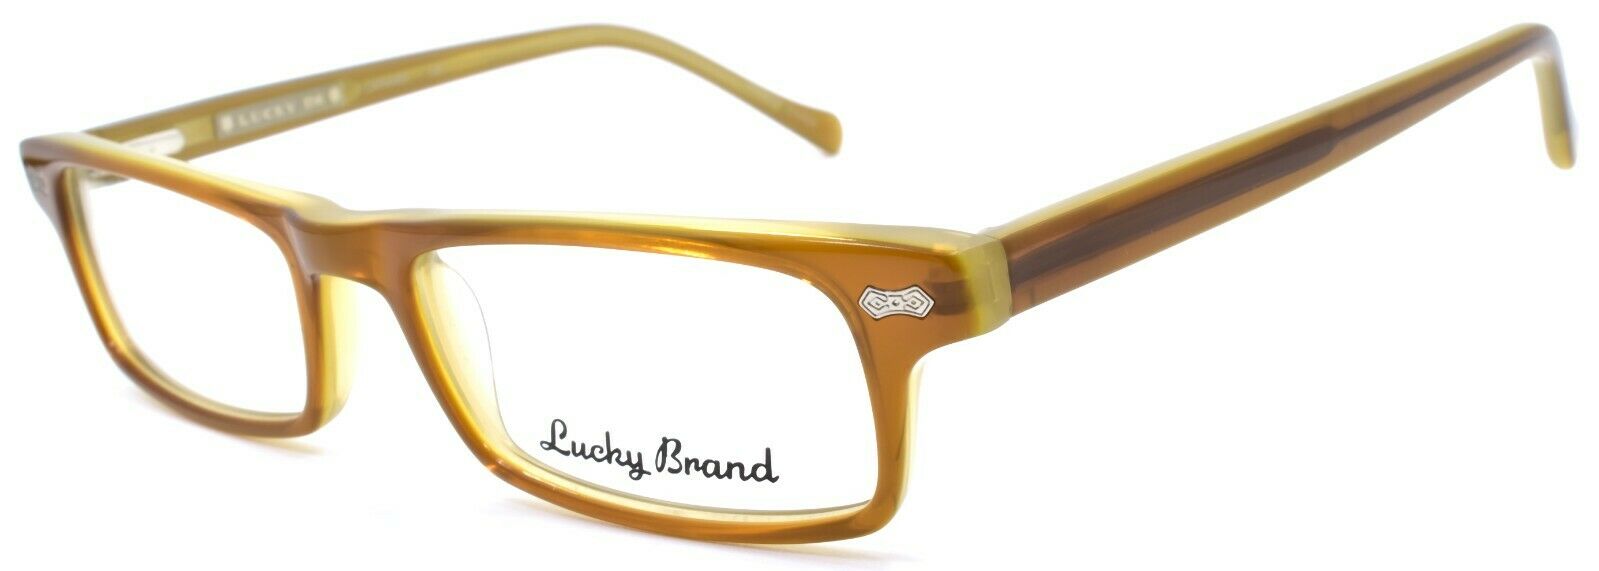 1-LUCKY BRAND Jacob Kids Boys Eyeglasses Frames 45-15-125 Caramel-751286140026-IKSpecs